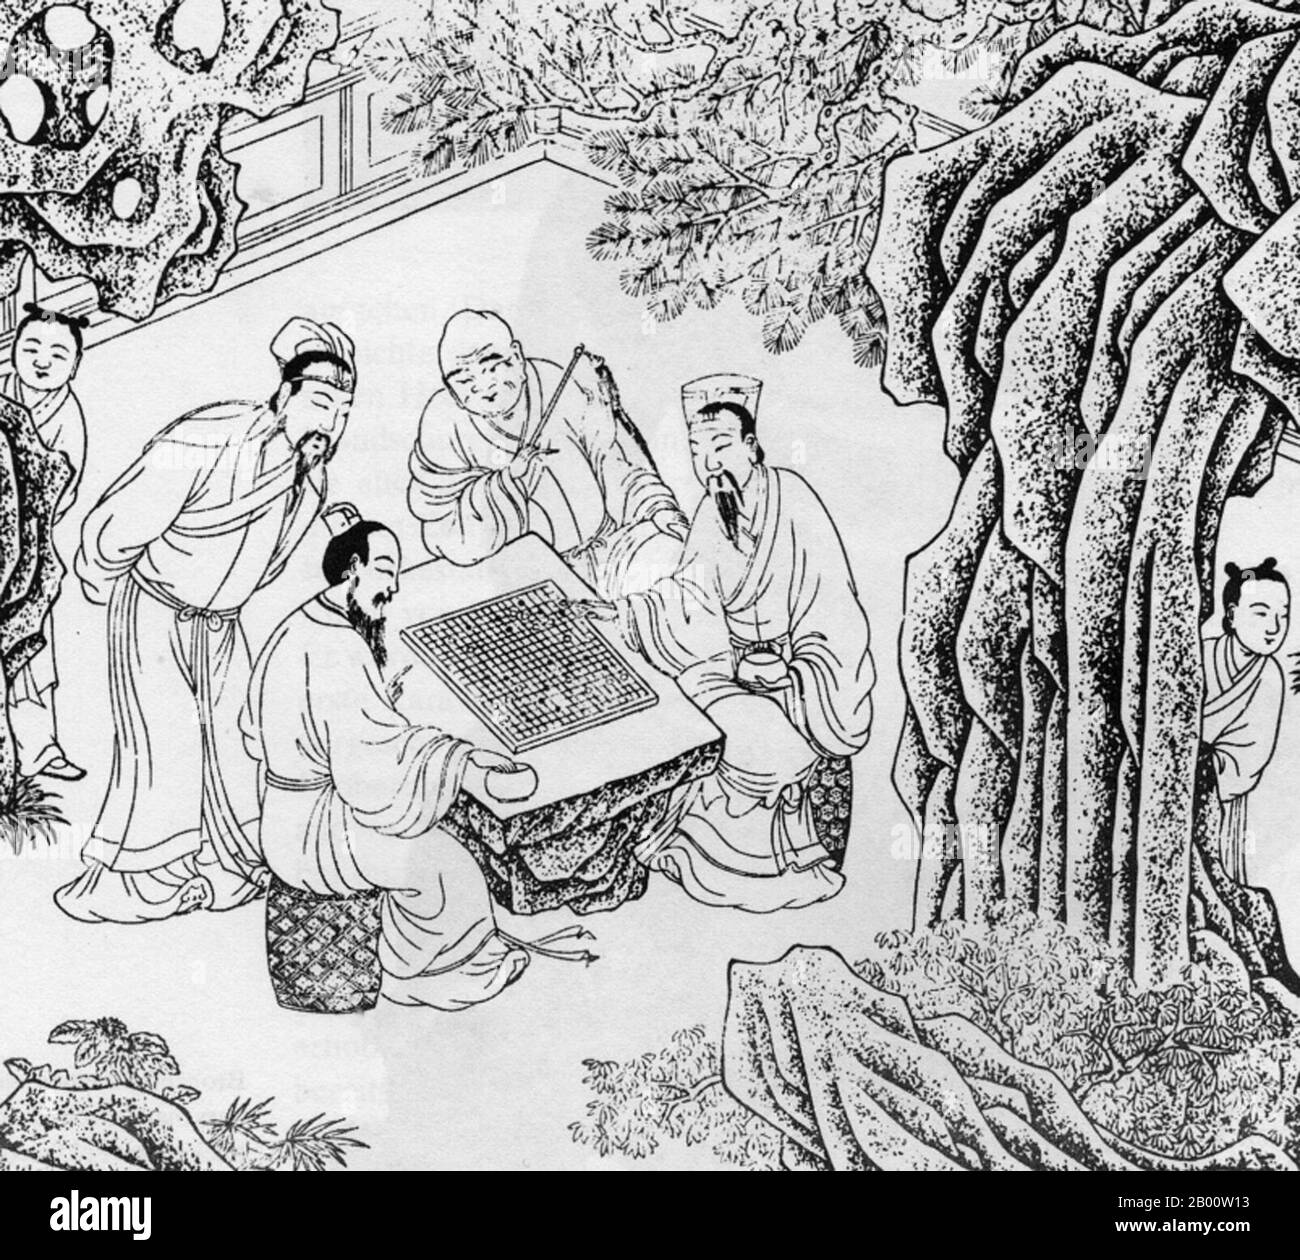 China: Männer, die im kaiserlichen China, wahrscheinlich in der Ming-Dynastie (1368-1644), ein Spiel von 'Go' spielen. Go (japanischer Name), bekannt als "weiqi" auf Chinesisch und "baduk" auf Koreanisch, ist ein altes Brettspiel für zwei Spieler, das trotz seiner relativ einfachen Regeln bekannt ist, reich an Strategie zu sein. Stockfoto